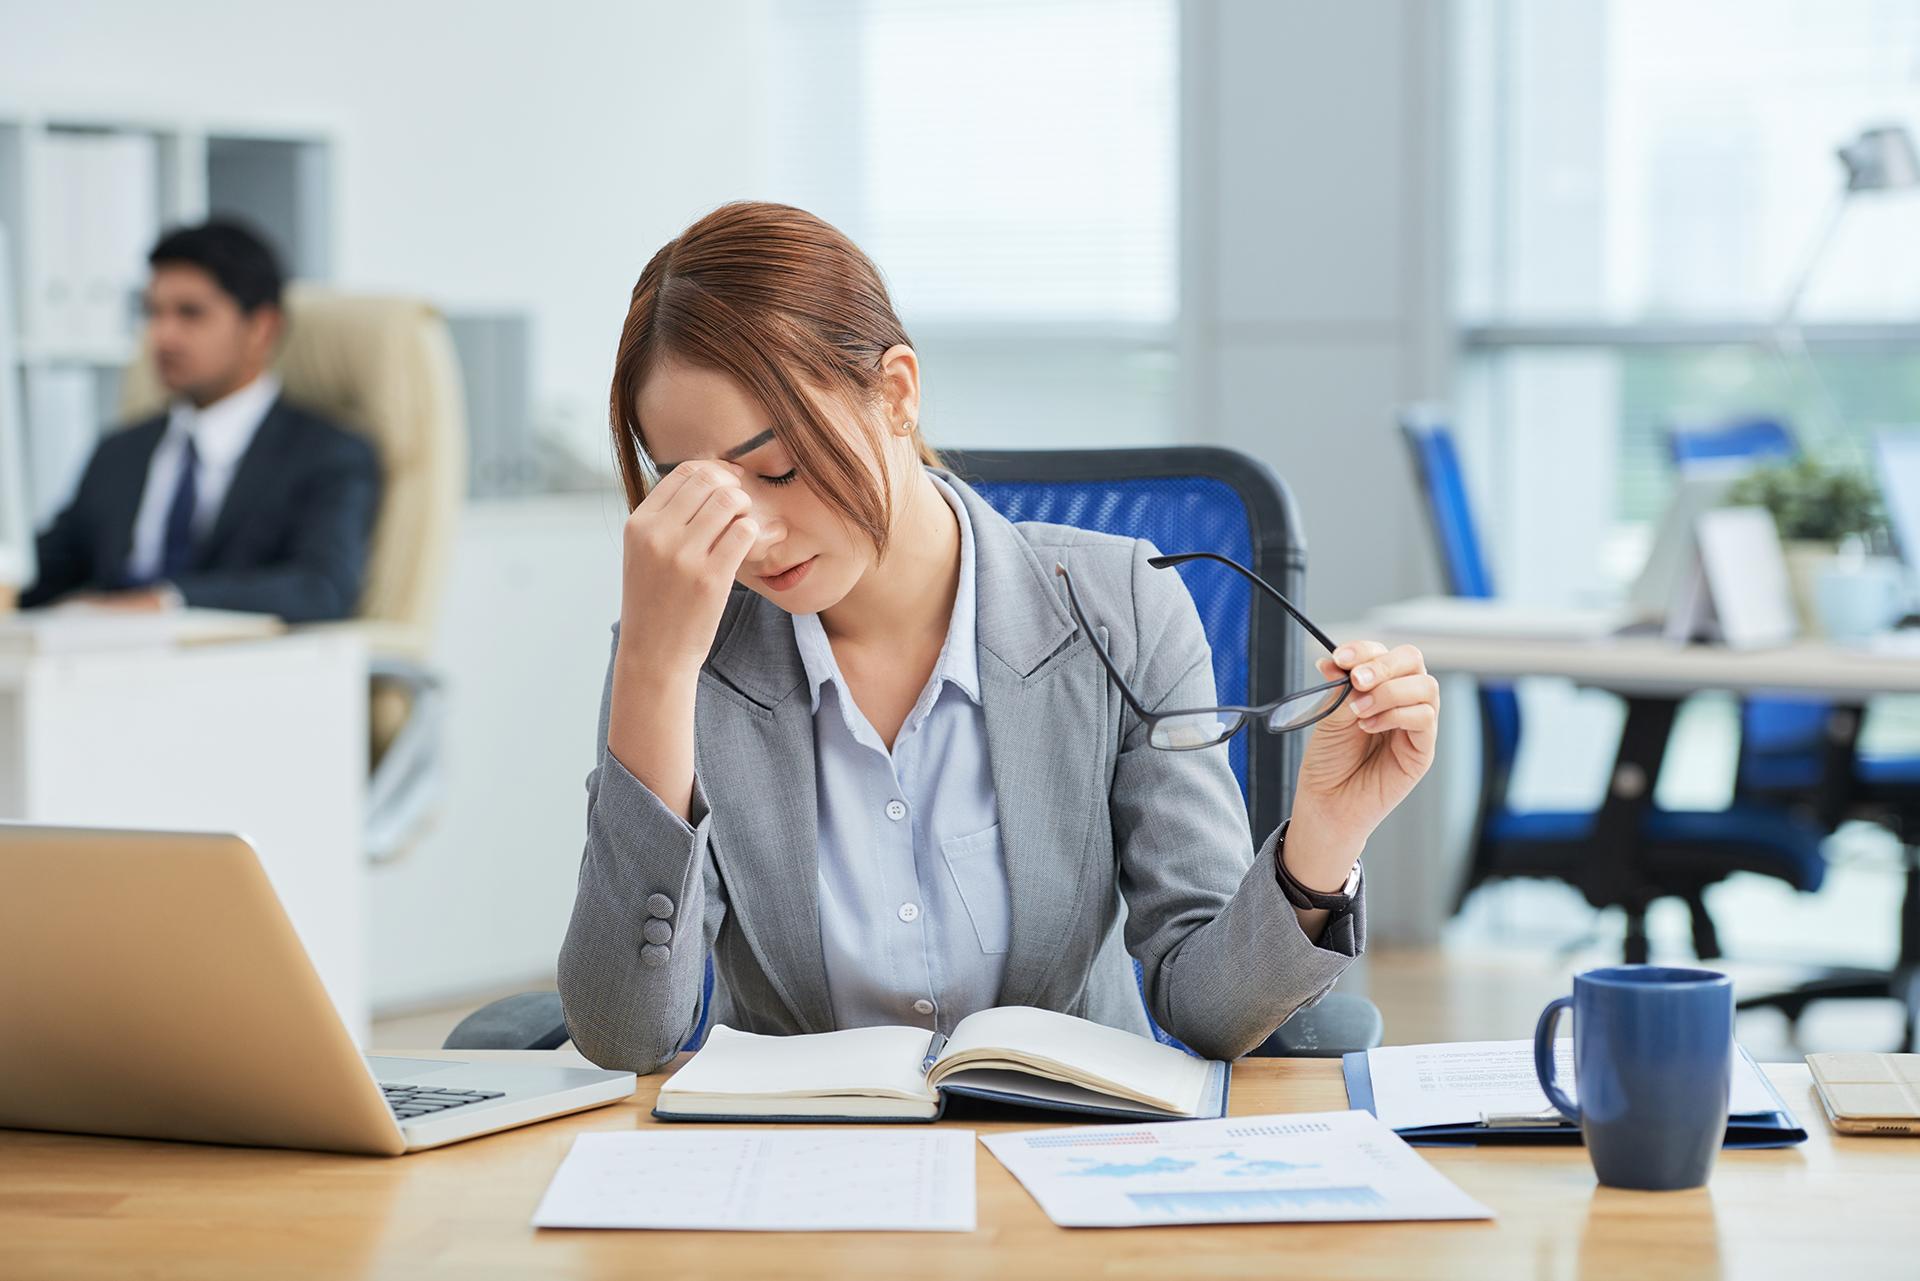 8 महत्वपूर्ण तरीके जिनसे तनाव और महिलाओं का स्वास्थ्य जुड़ा हुआ है